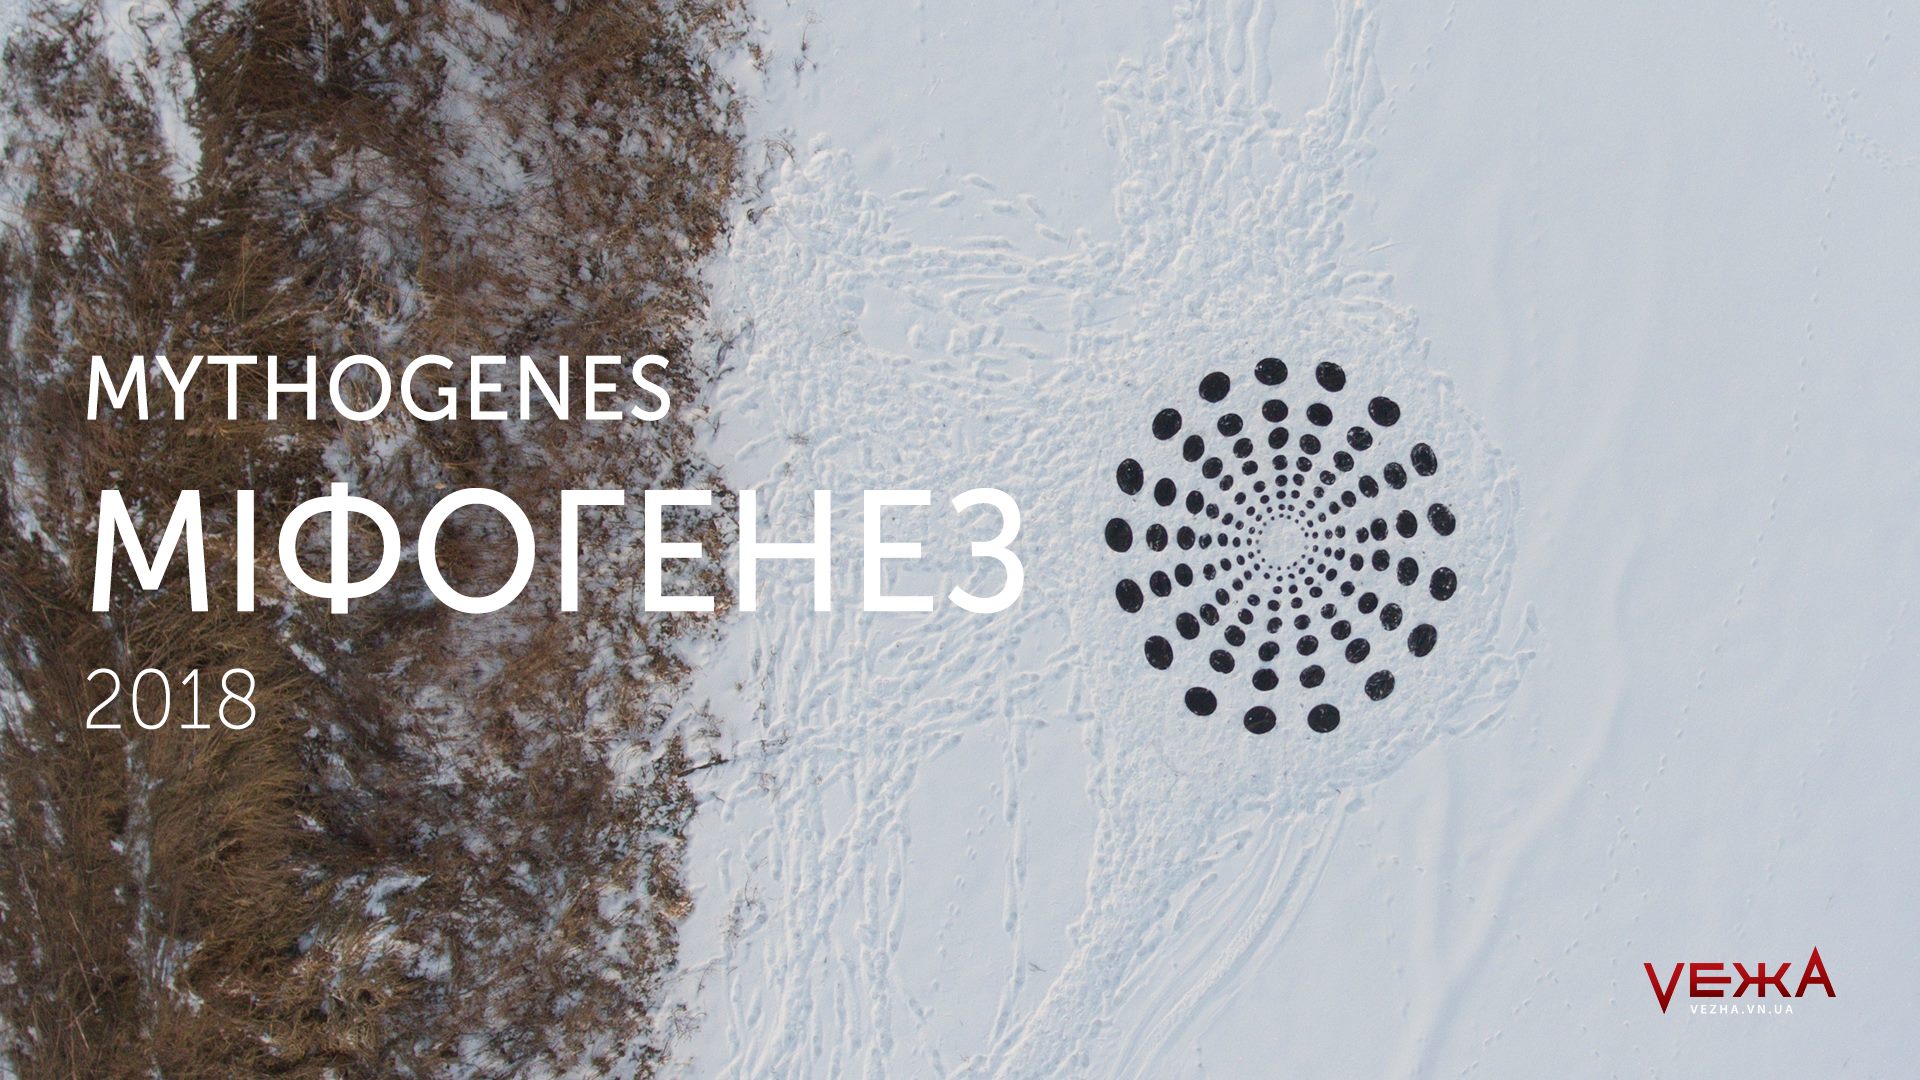 “Міфогенез” з висоти пташиного польоту: опубліковане відео з цьогорічного фестивалю ленд-арту на Великих валах